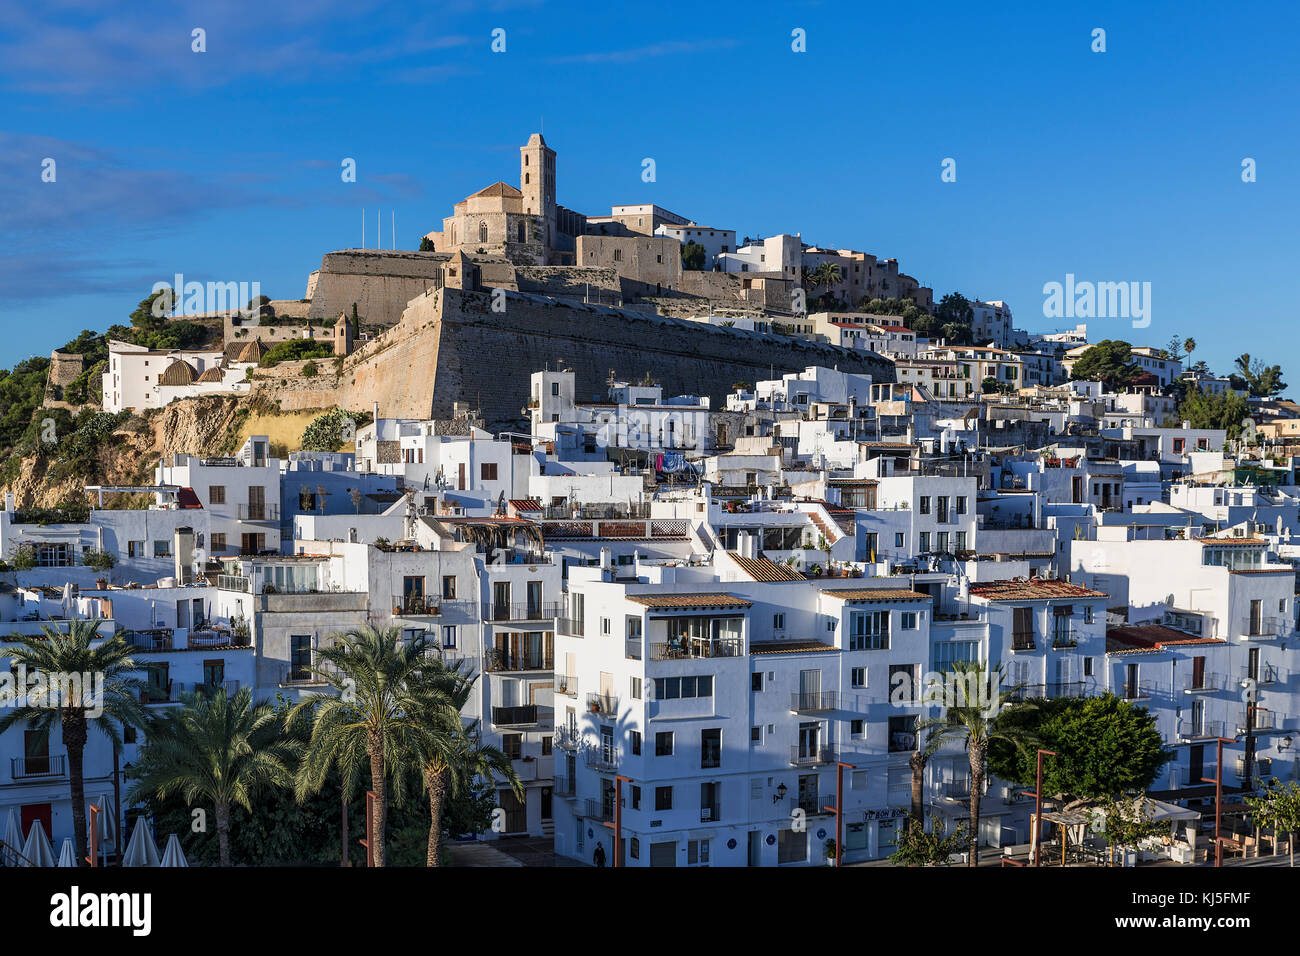 La ciudad de Ibiza y la catedral de Santa Maria d'Eivissa, Ibiza, Islas Baleares, España. Foto de stock